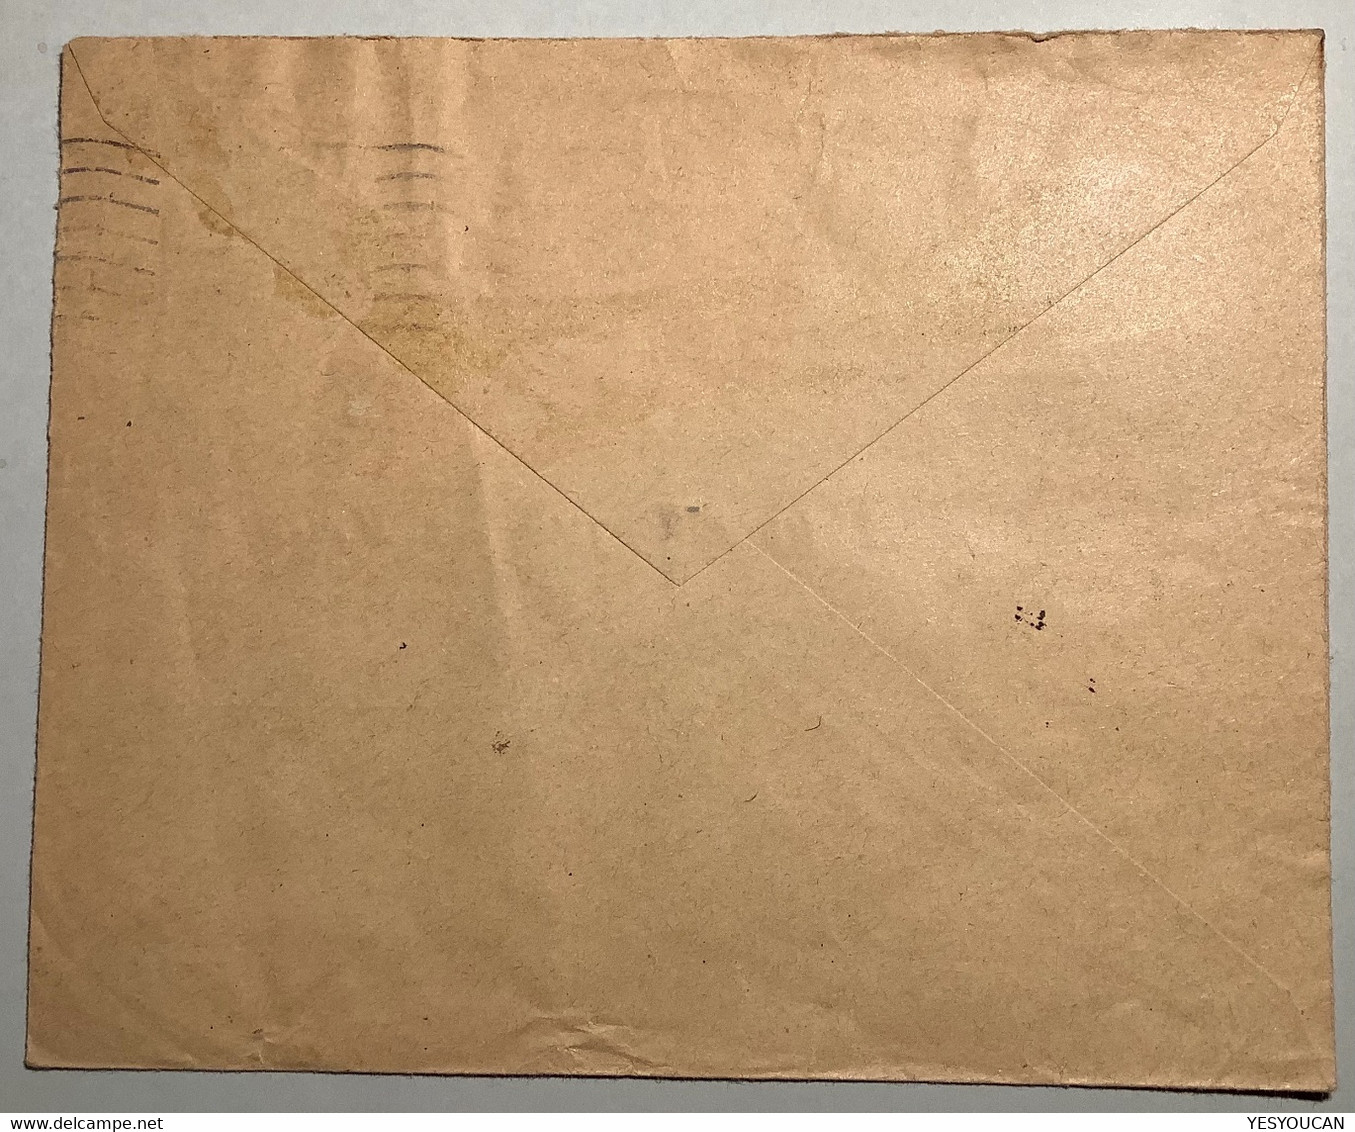 LYON "R.F" LIBERATION Oblit RARE "ST ETIENNE LOIRE 1944"lettre Non Philatelique Banque De France Pétain(WW2 War Guerre - Libération